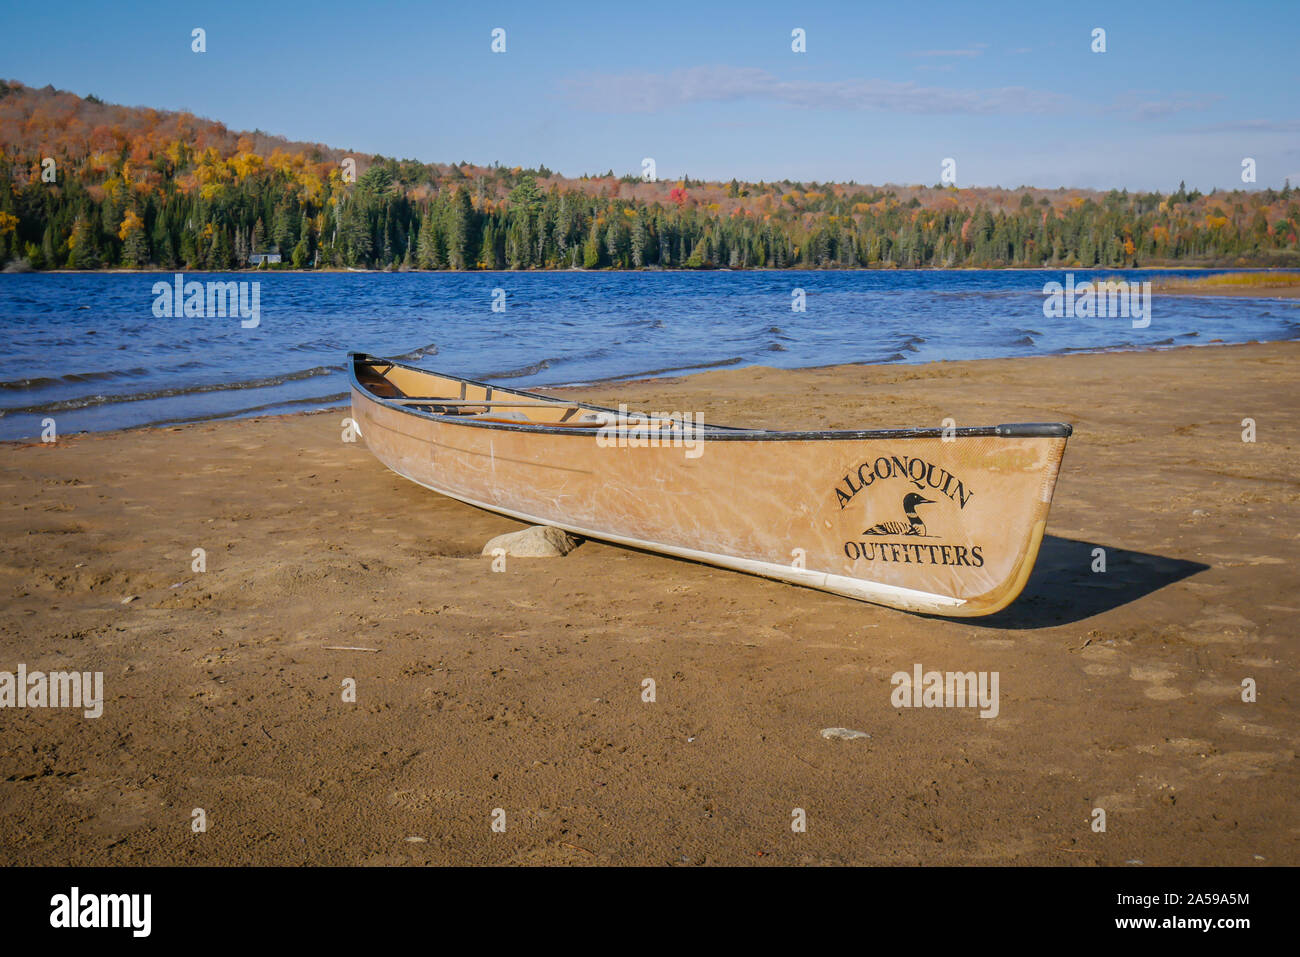 Canoa in legno a sinistra su una spiaggia soleggiata giornata in prossimità di acqua Foto Stock